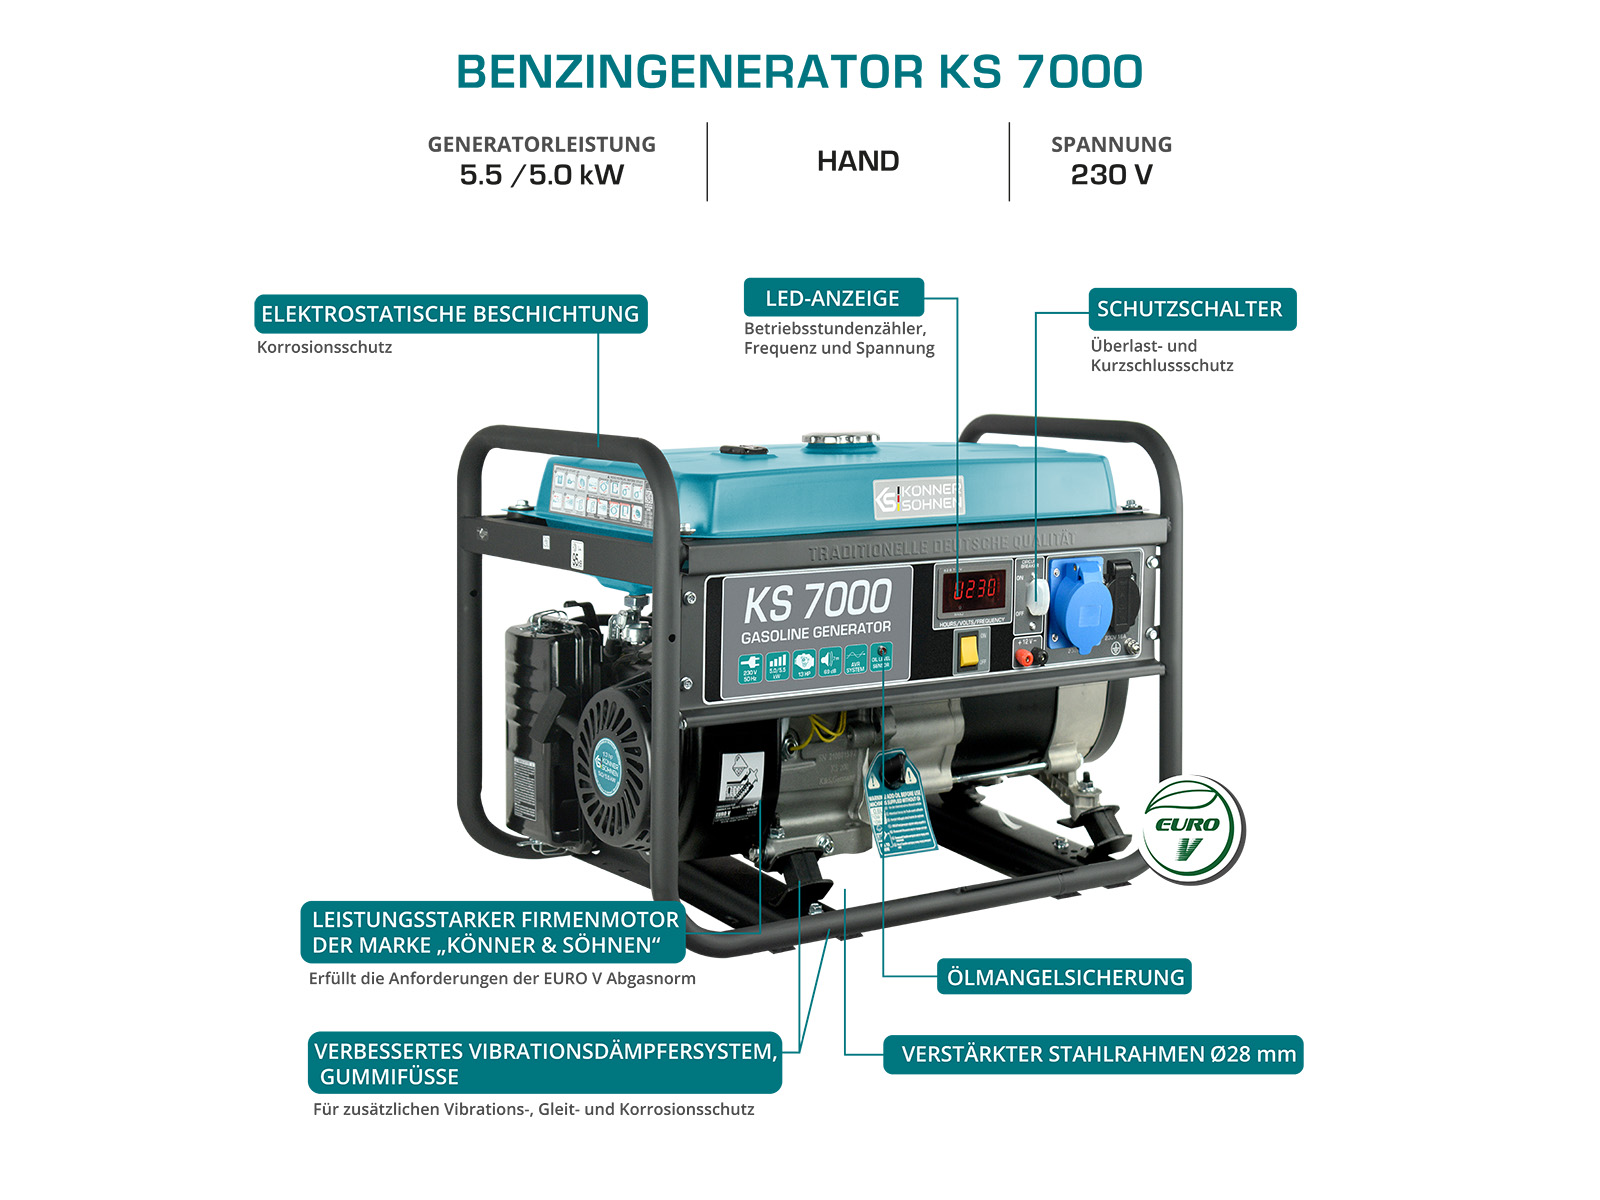 Benzin-Generator "Könner & Söhnen" KS 7000